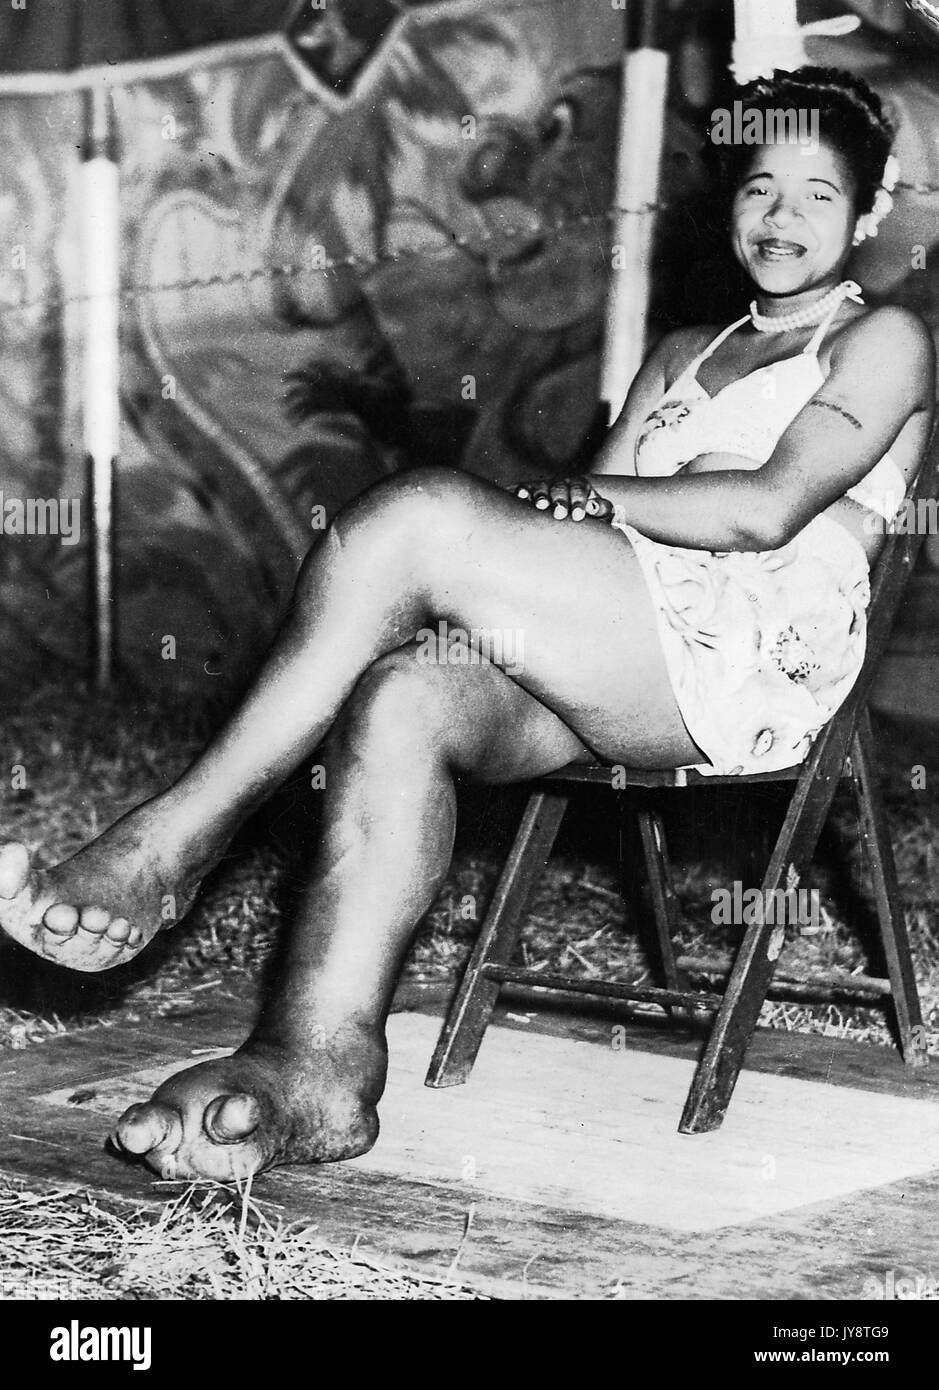 African American Circus Sideshow entertainer Sylvia Portis, wie Sylvia der Elefant Mädchen bekannt, lächelnd und mit ihren Füßen, die deformiert sind und Anzeichen der Krankheit Elephantiasis, 1944. Stockfoto